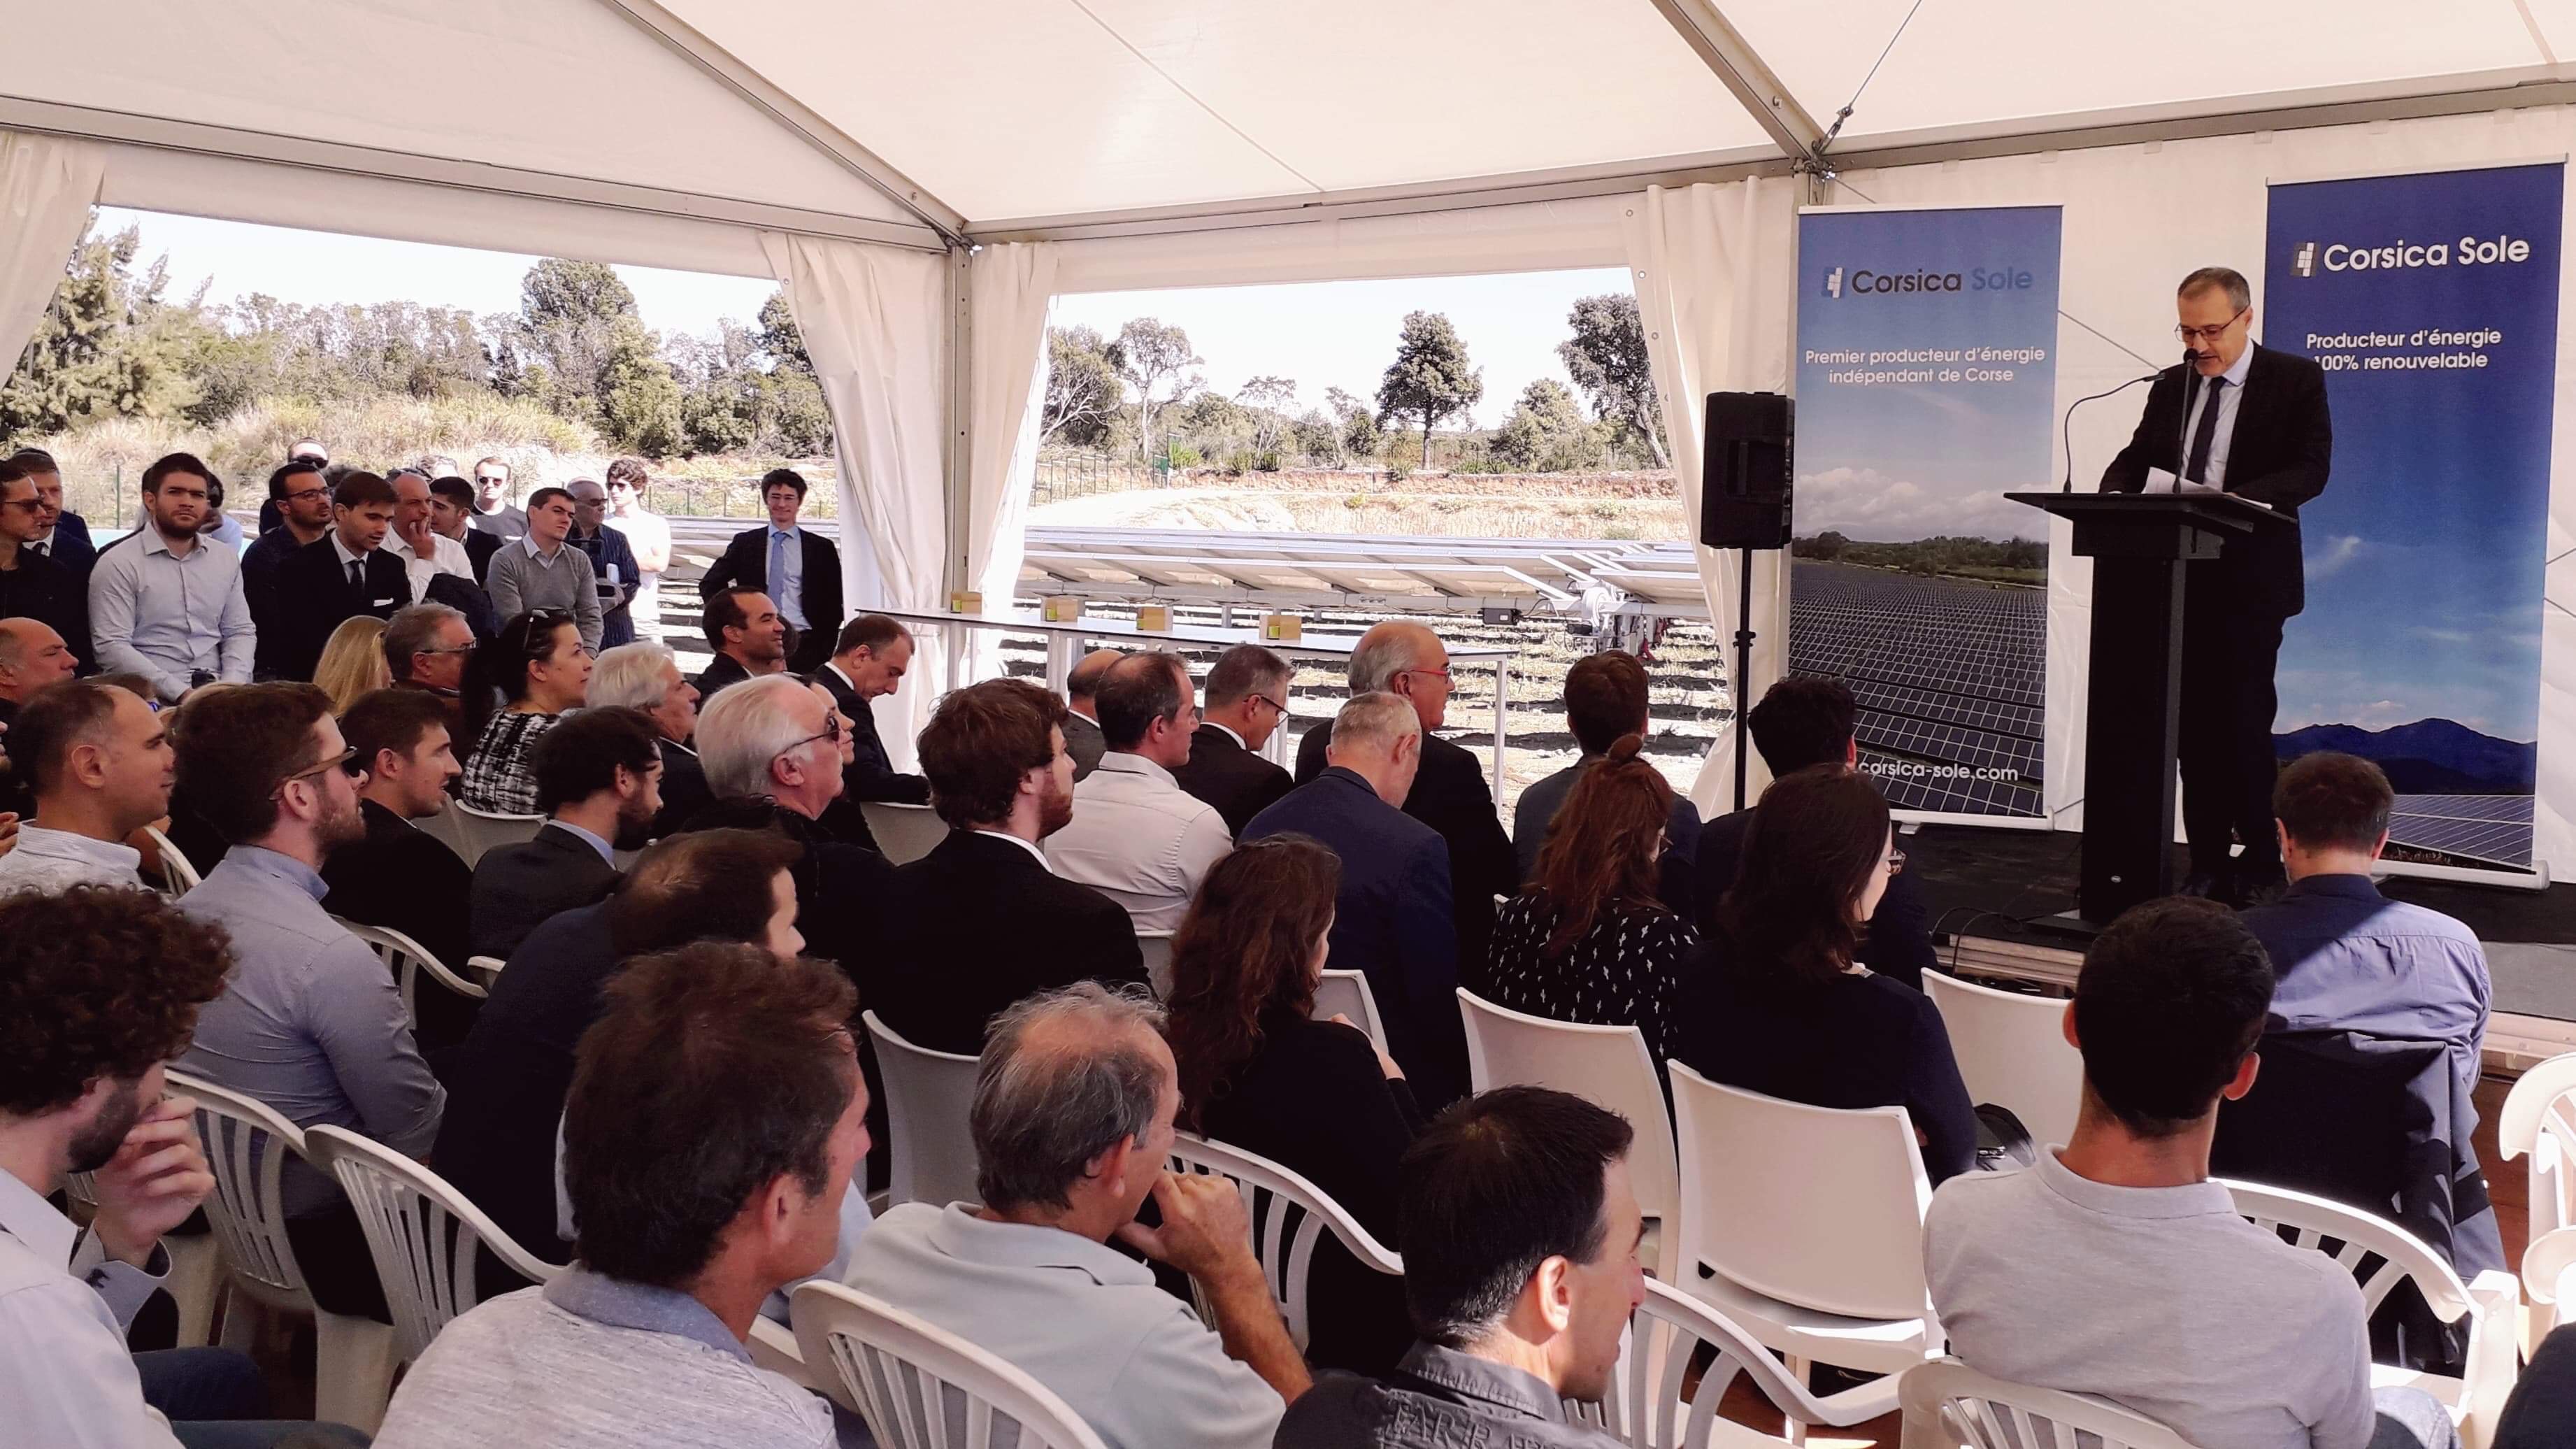 Centrale photovoltaïque de Giuncaghju : une réalisation qui contribuera à l'indépendance énergétique de la Corse